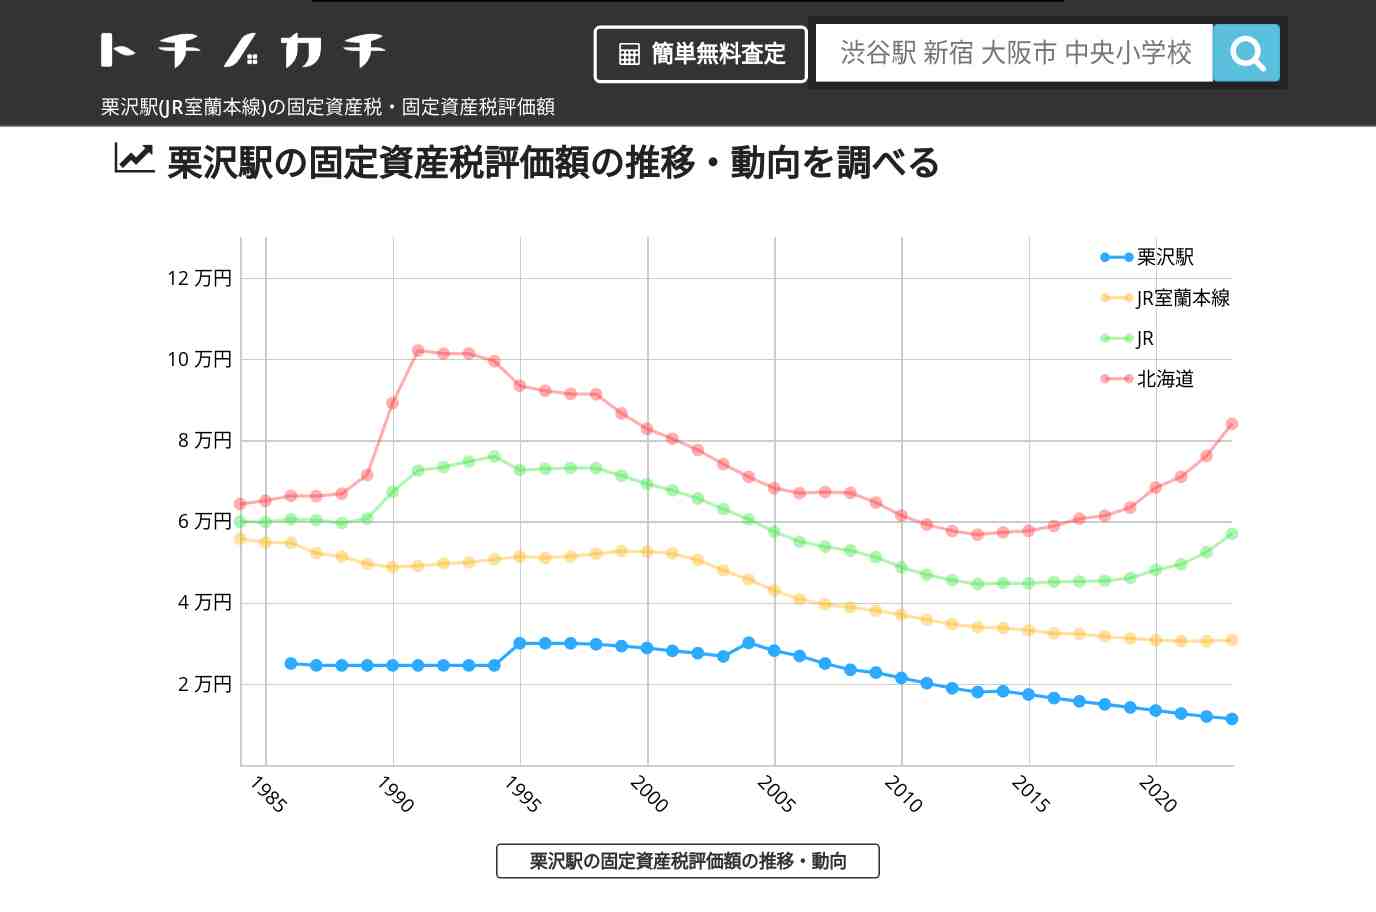 栗沢駅(JR室蘭本線)の固定資産税・固定資産税評価額 | トチノカチ